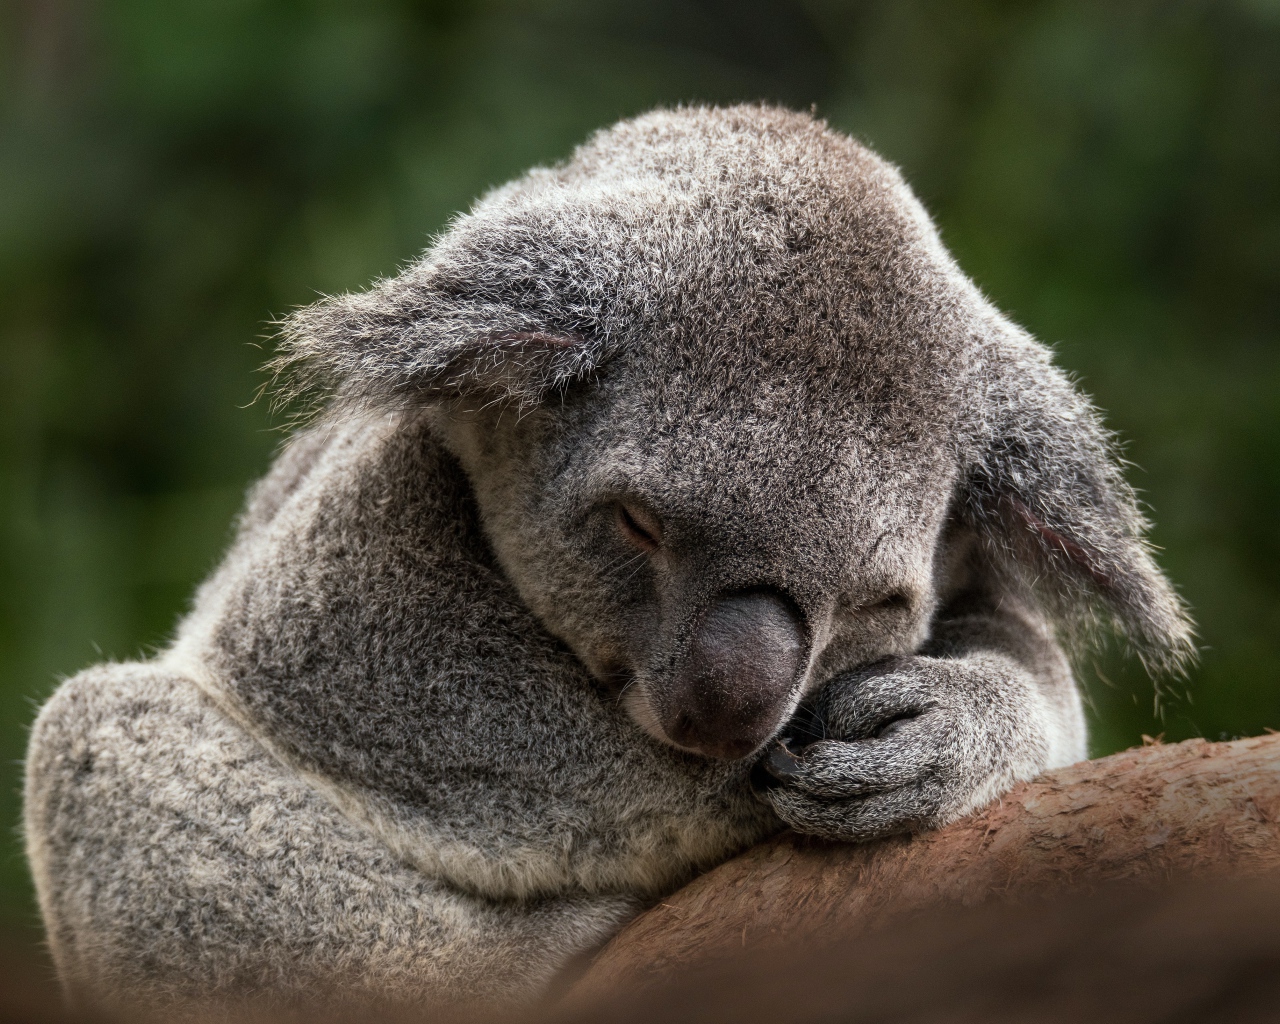 Koala sleeping on a tree branch